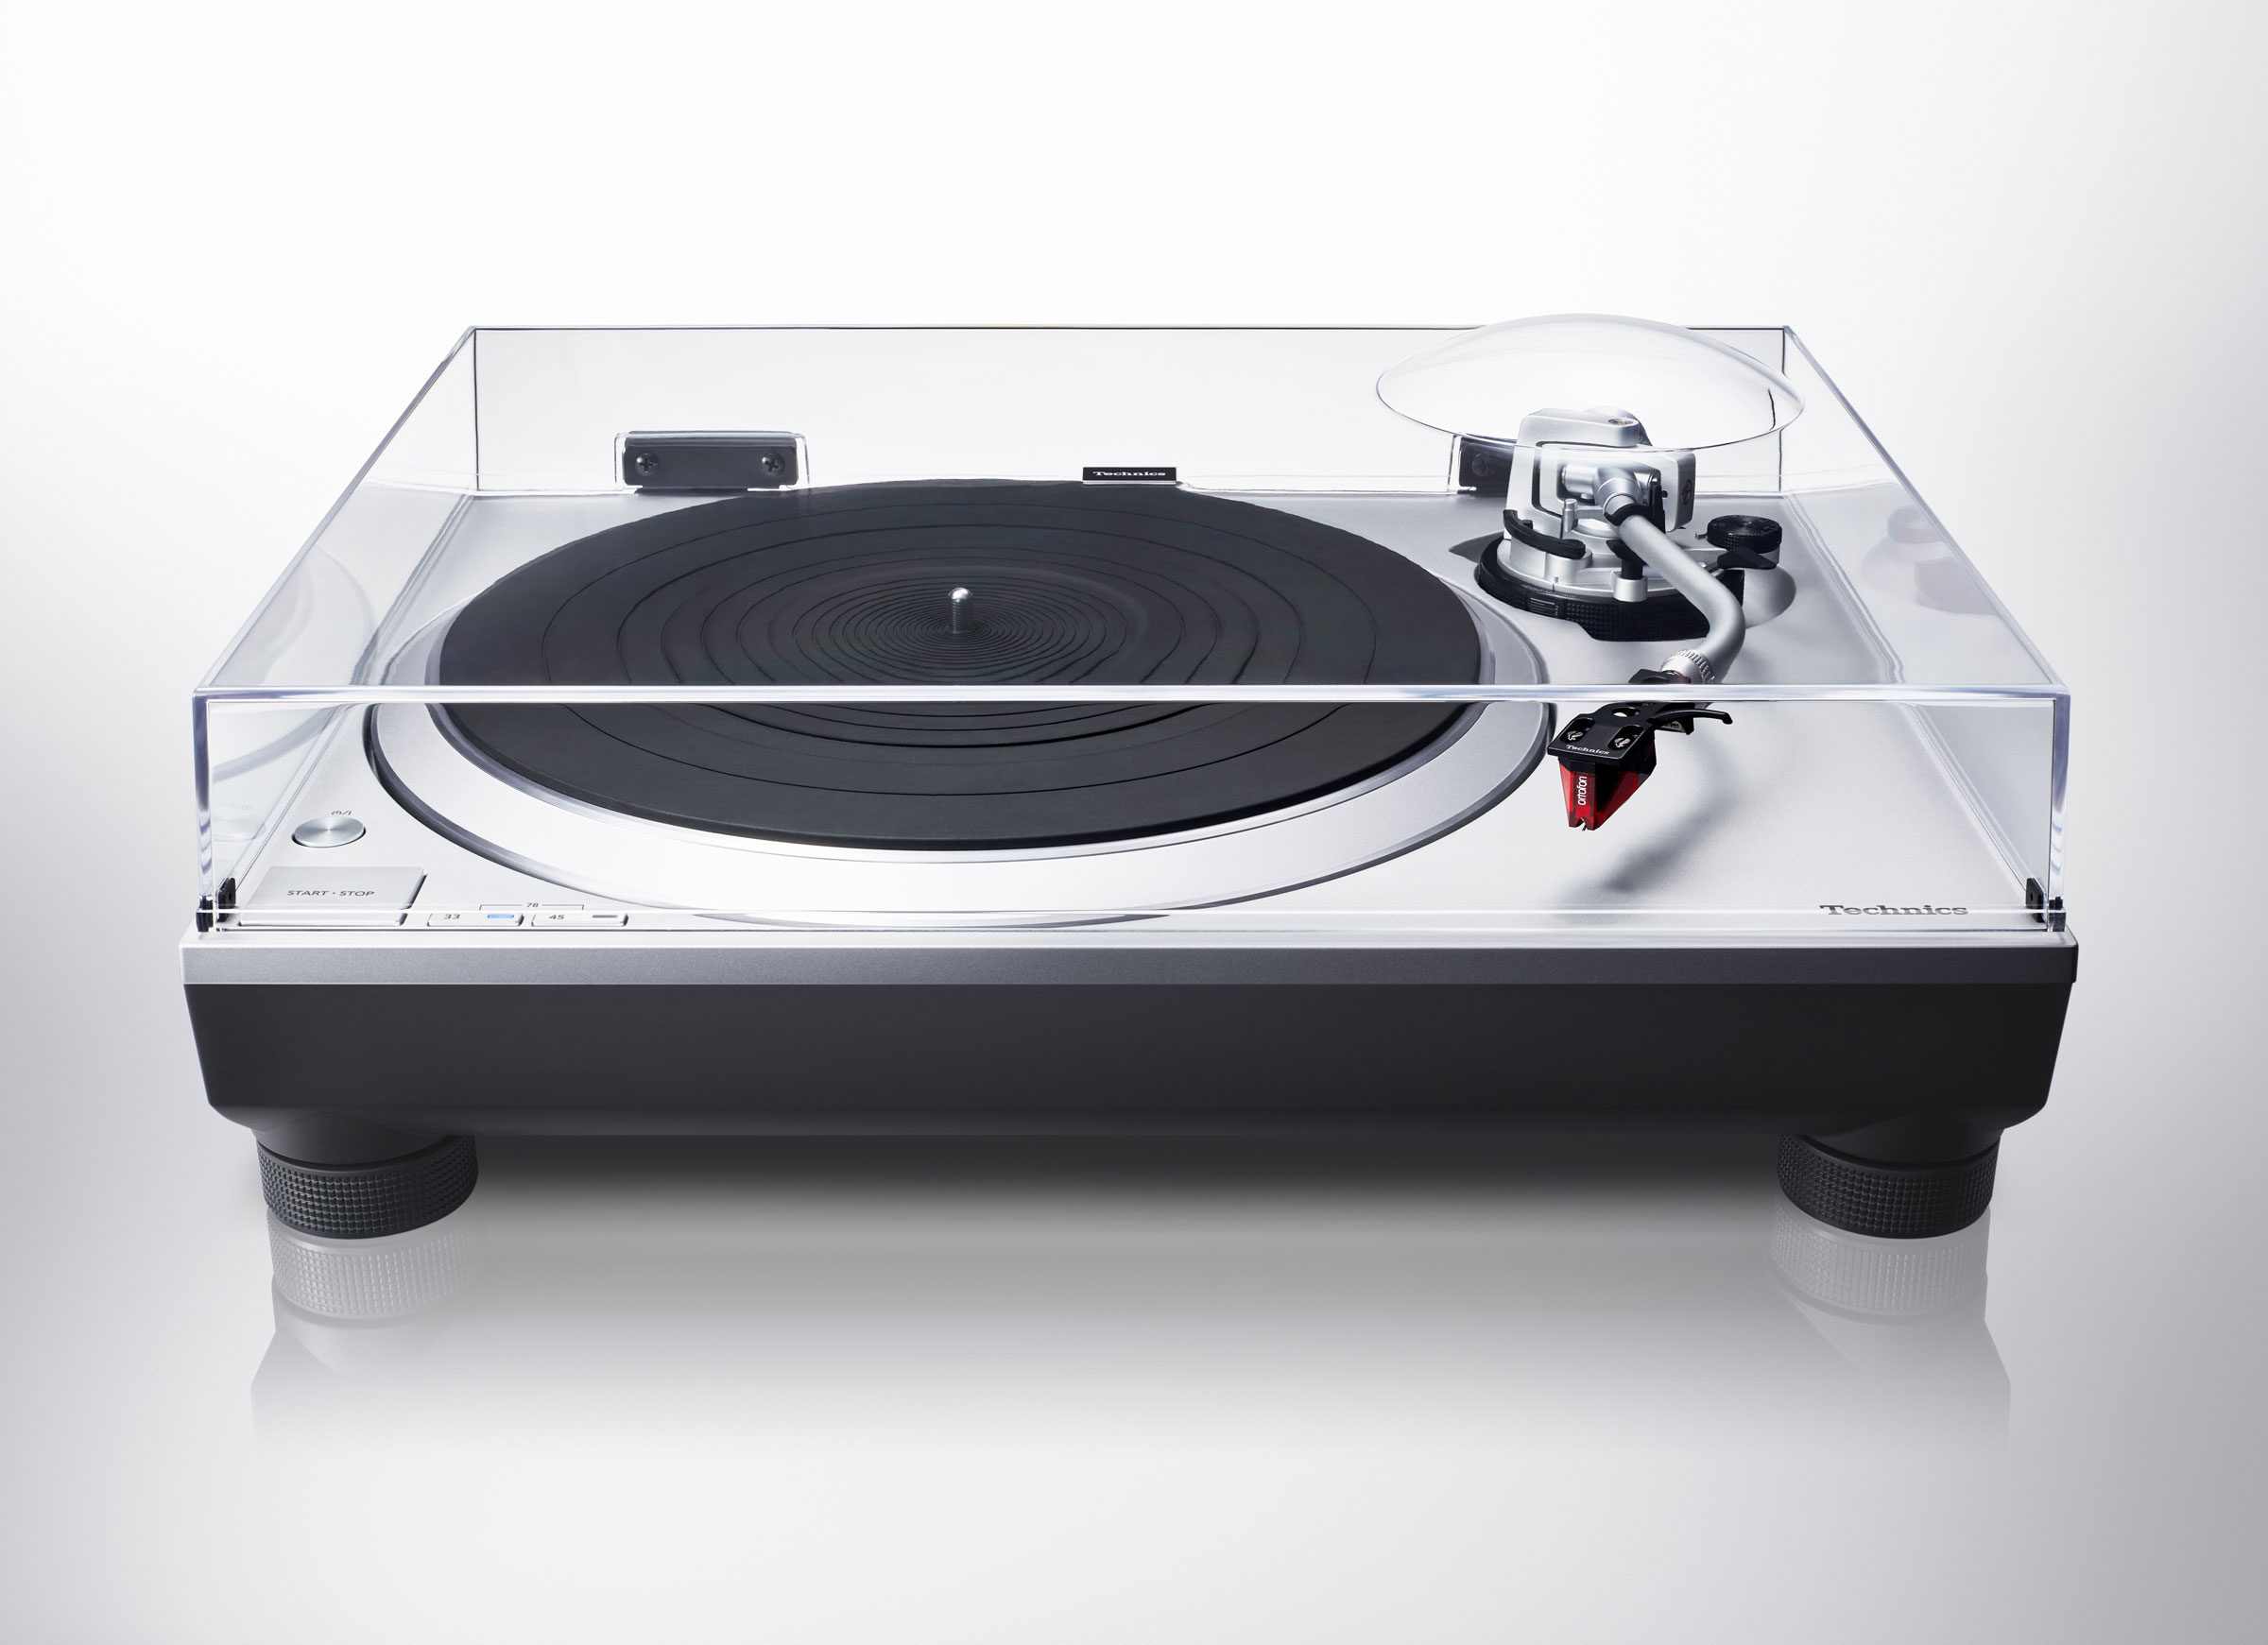 Technics SL-1200GR Silver - Platine Vinyle Audiophile et DJ